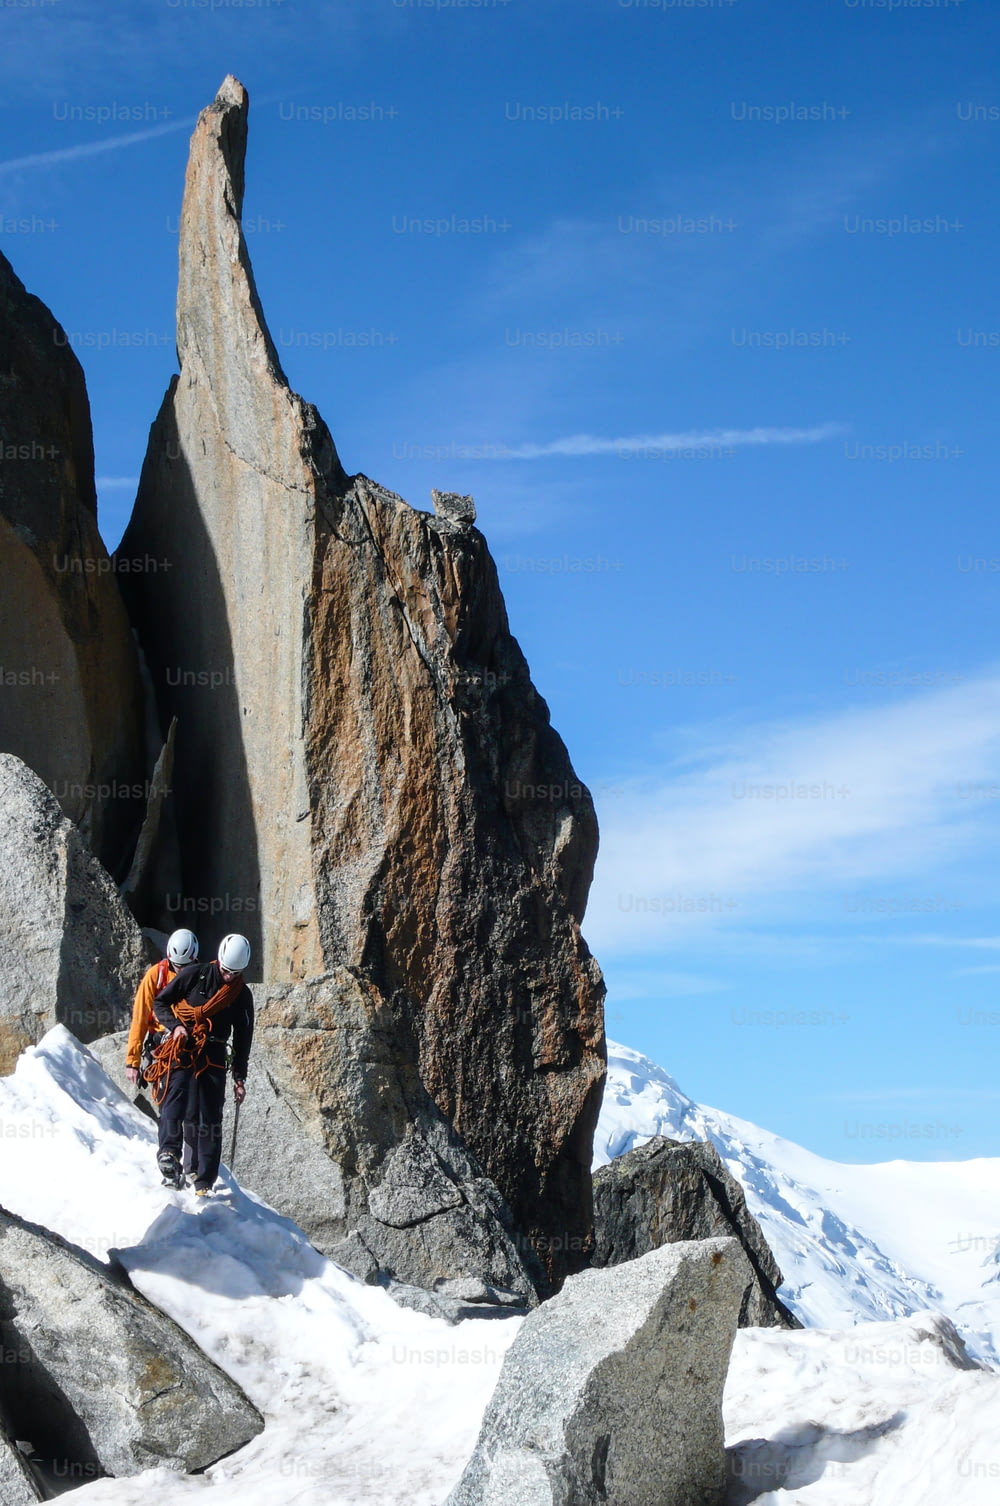 guida alpina e un cliente su una cresta rocciosa in direzione di un'alta vetta delle Alpi francesi vicino a Chamonix in una bella giornata estiva